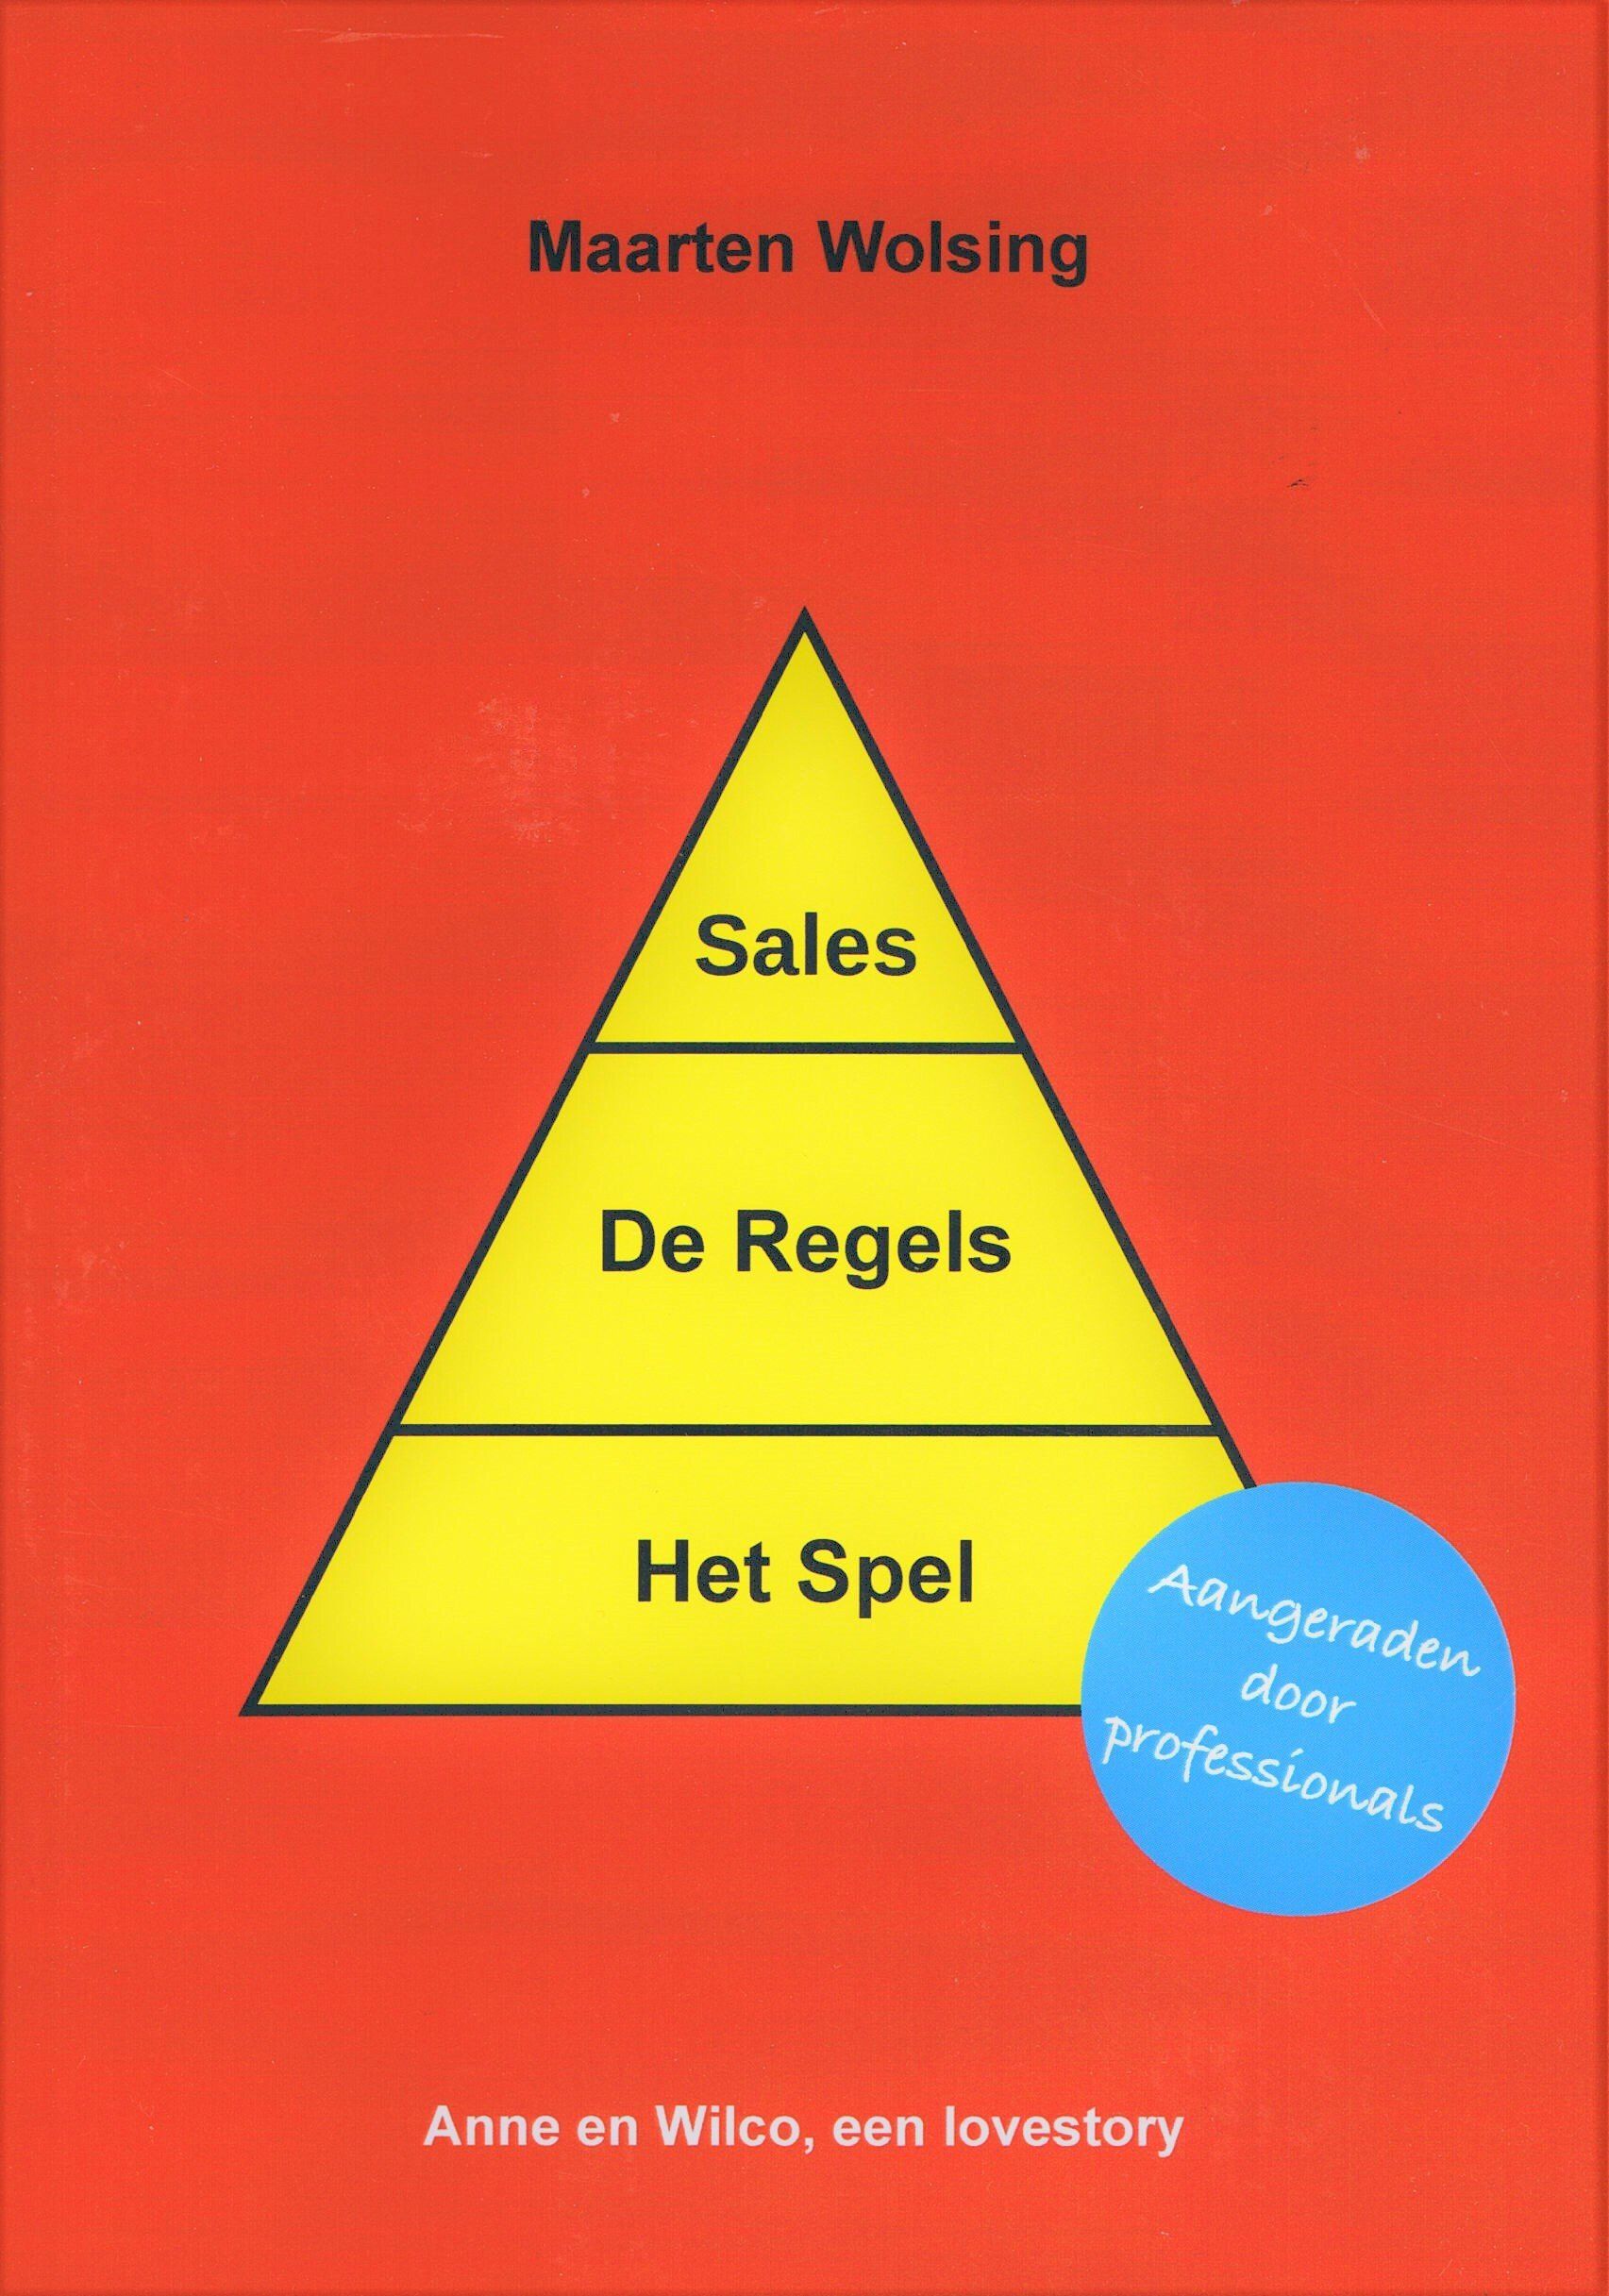 Een boek met de titel sales de regels het spel van Maarten Wolsing